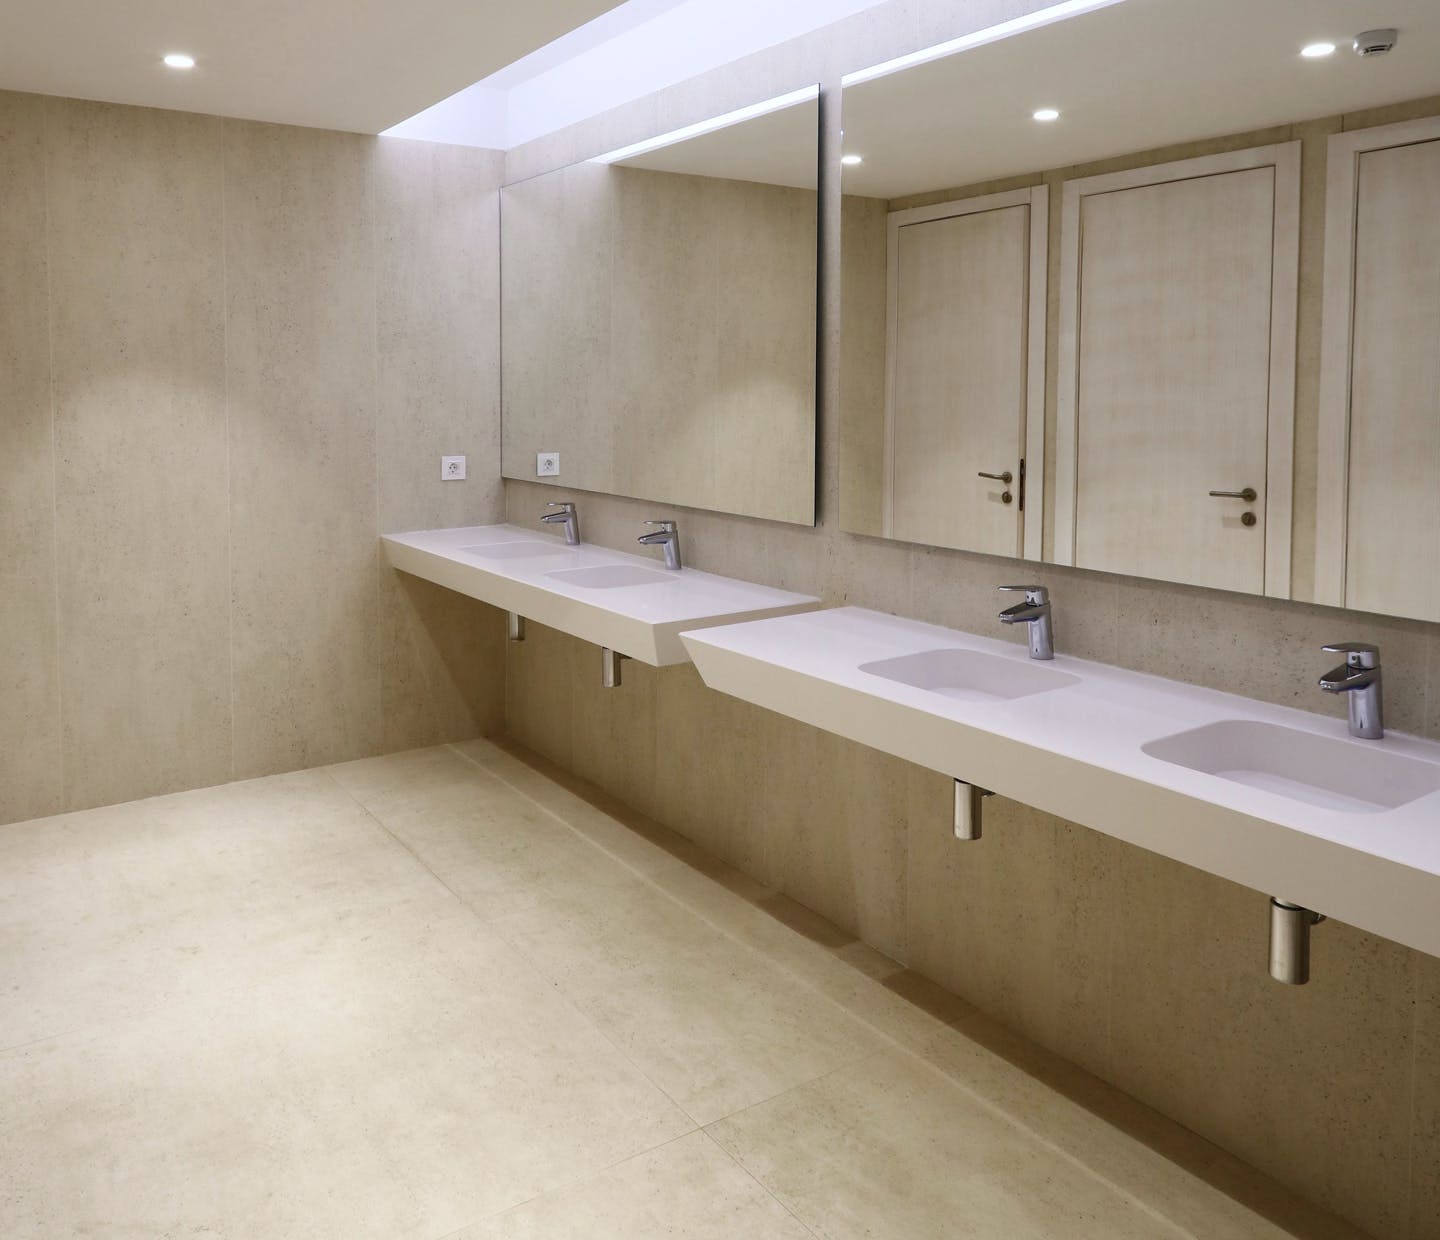 Image of Soluciones Integrales in Designer bathrooms with unique materials - Cosentino